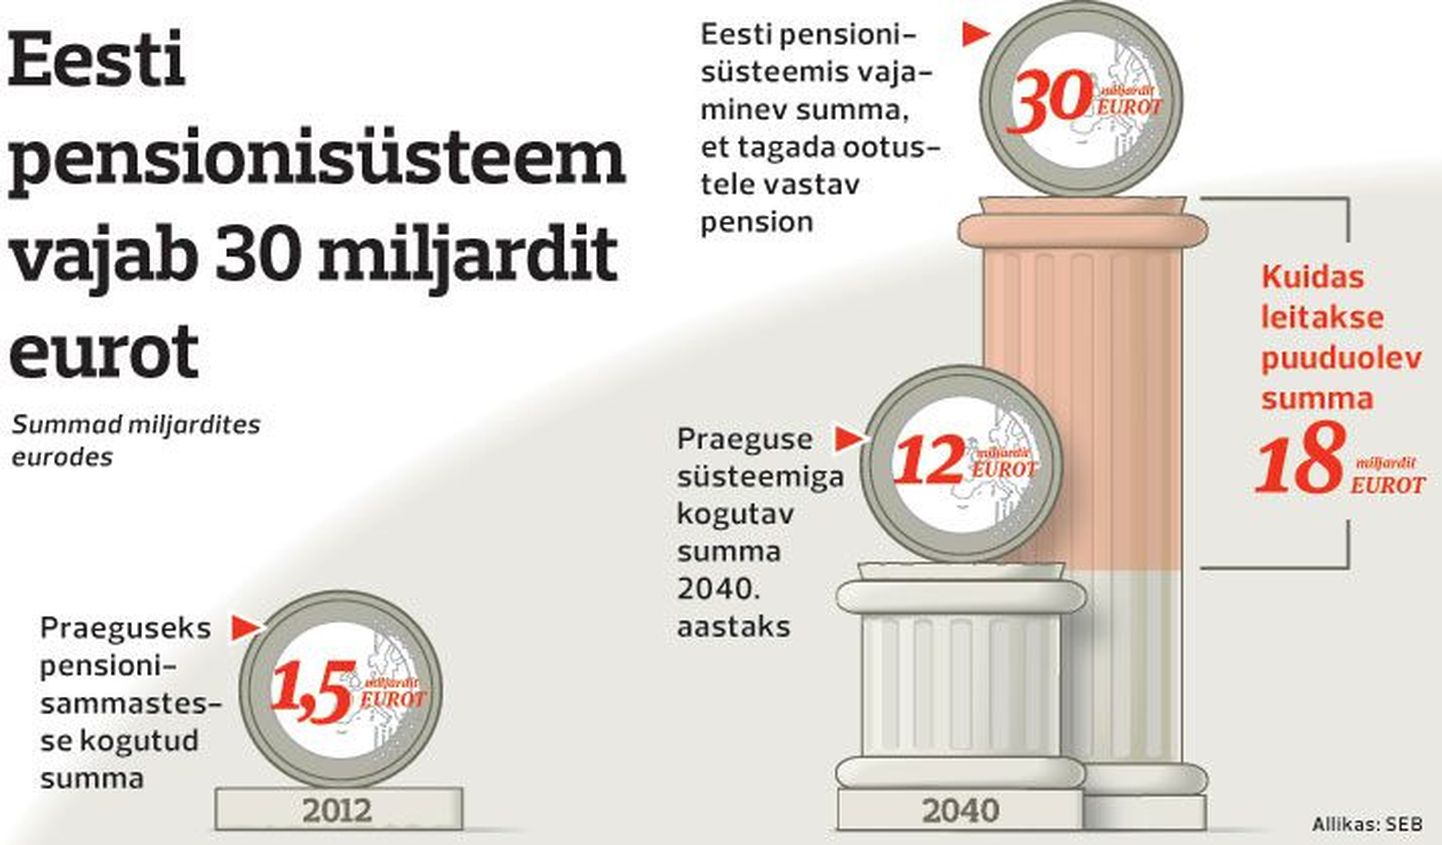 Eesti pensionisüsteem vajab 30 miljardit eurot.